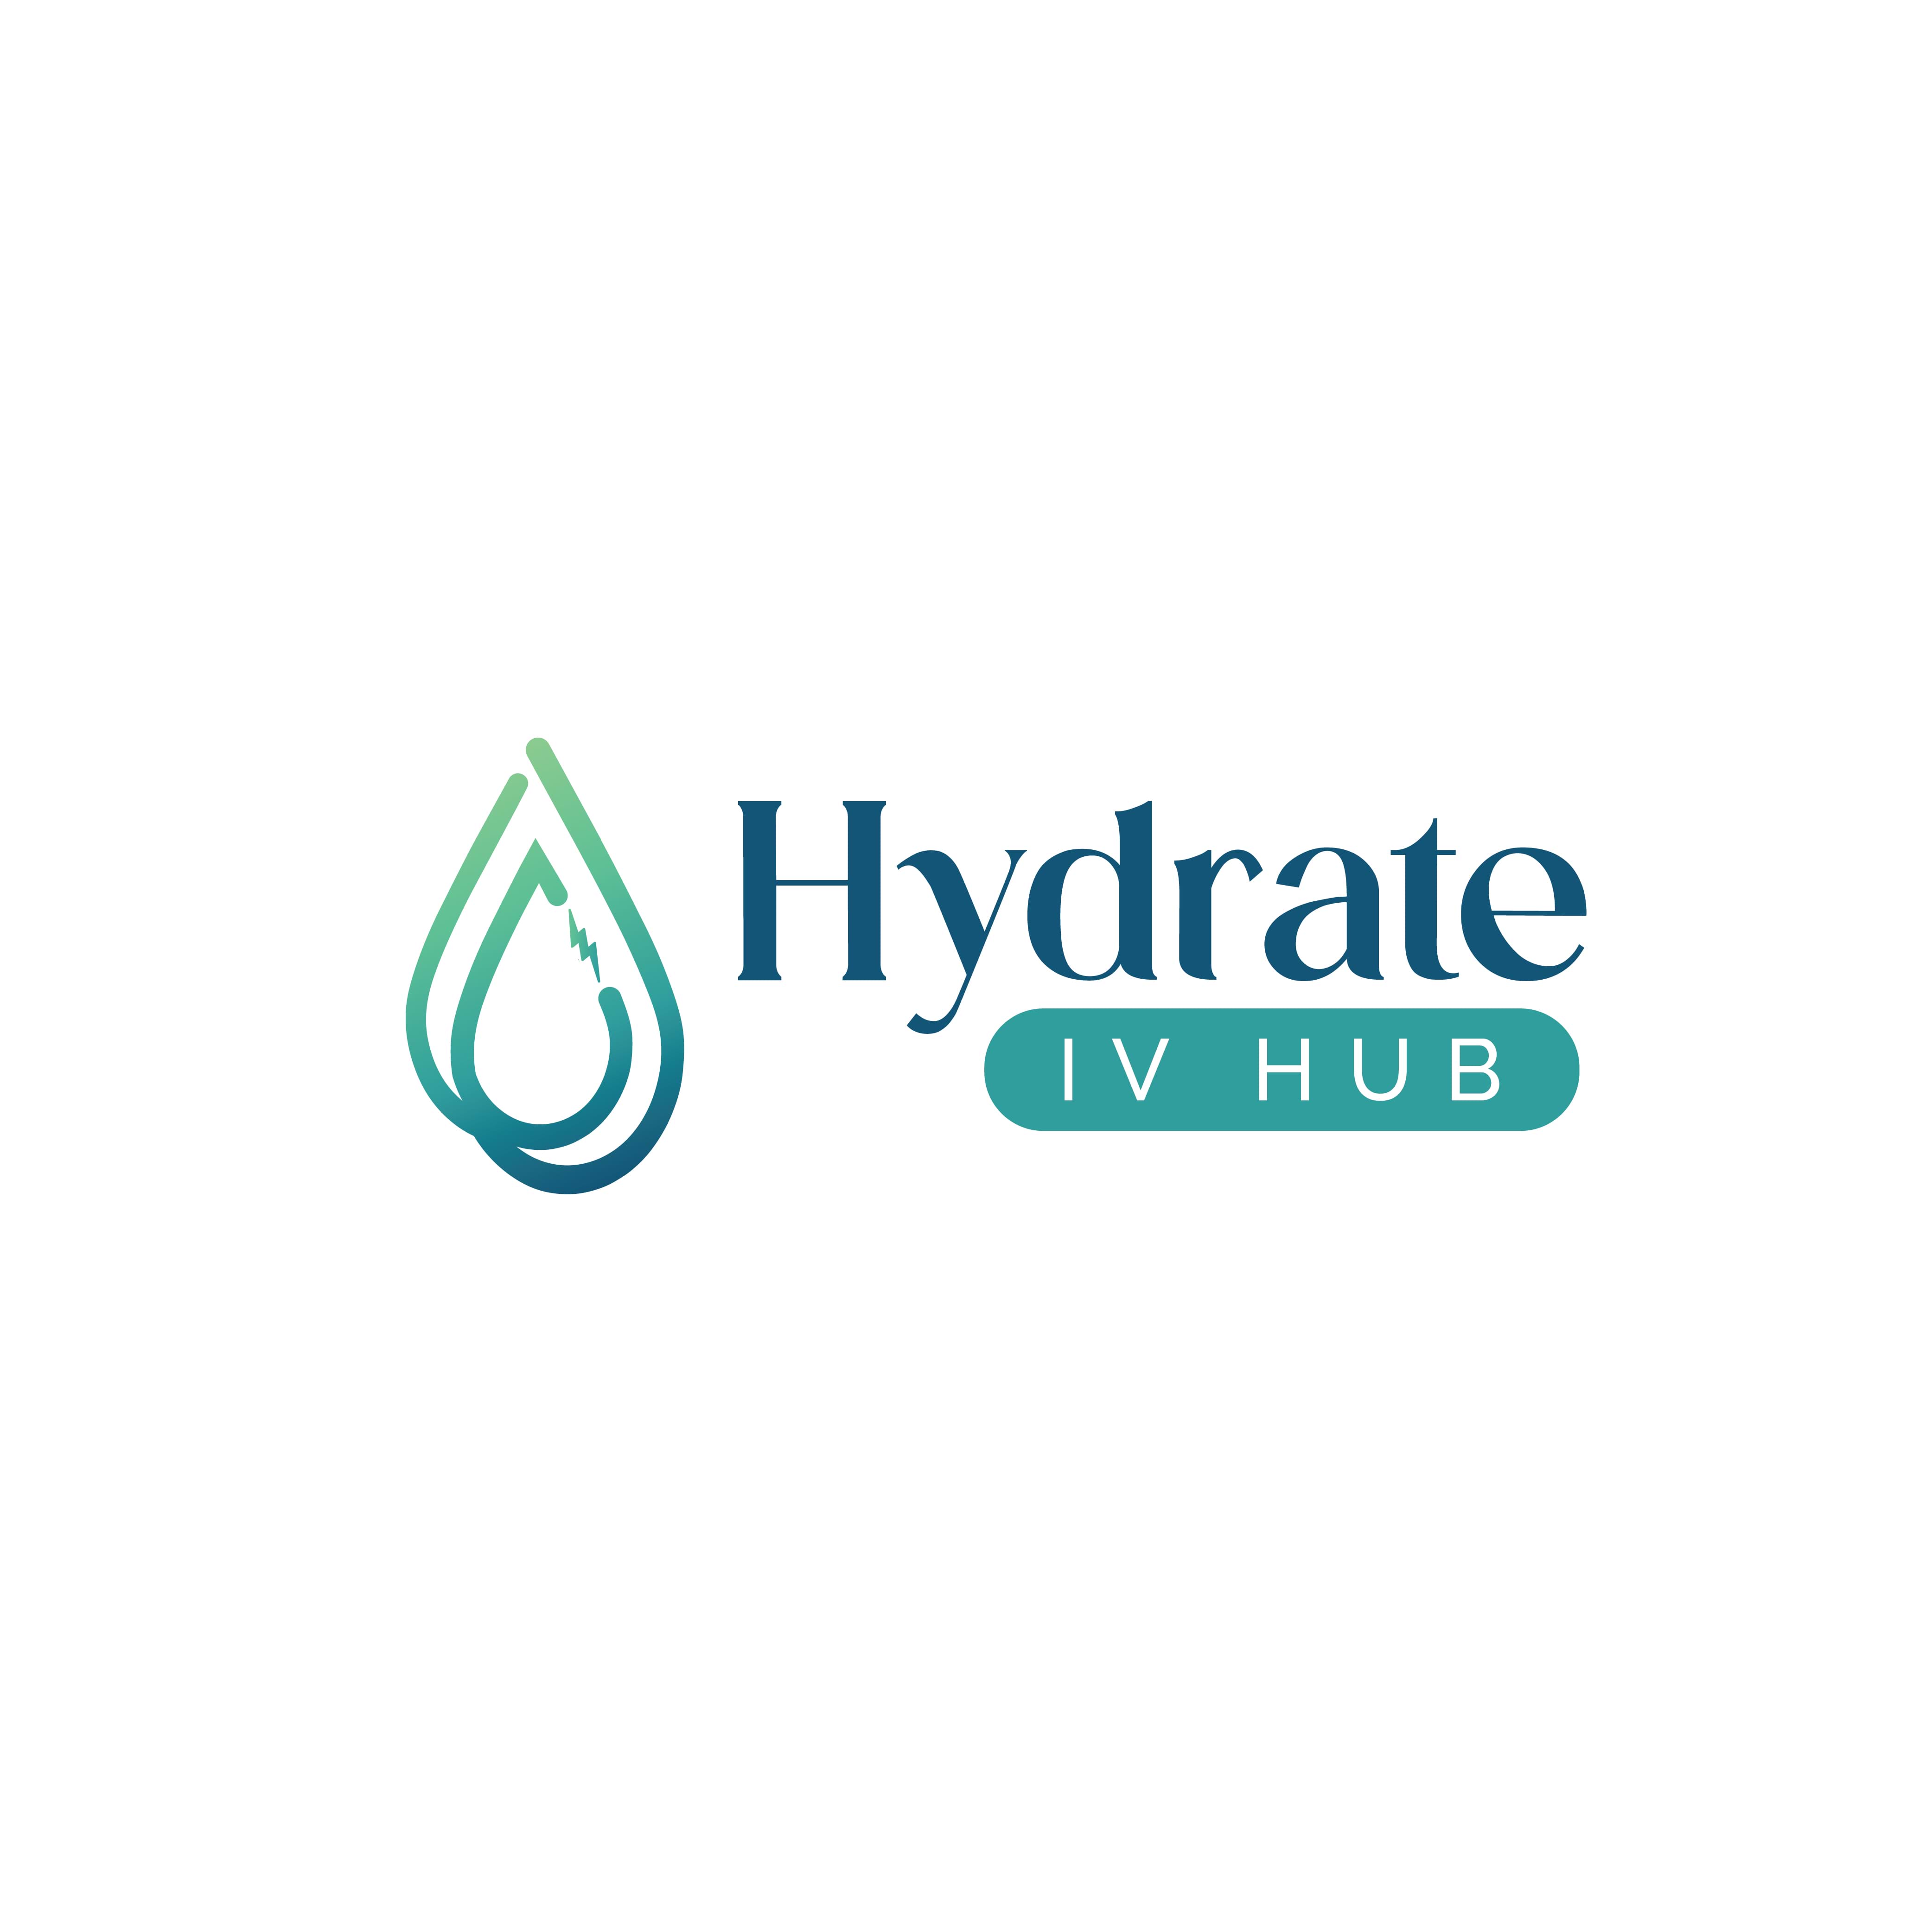 Hydrate IV Hub